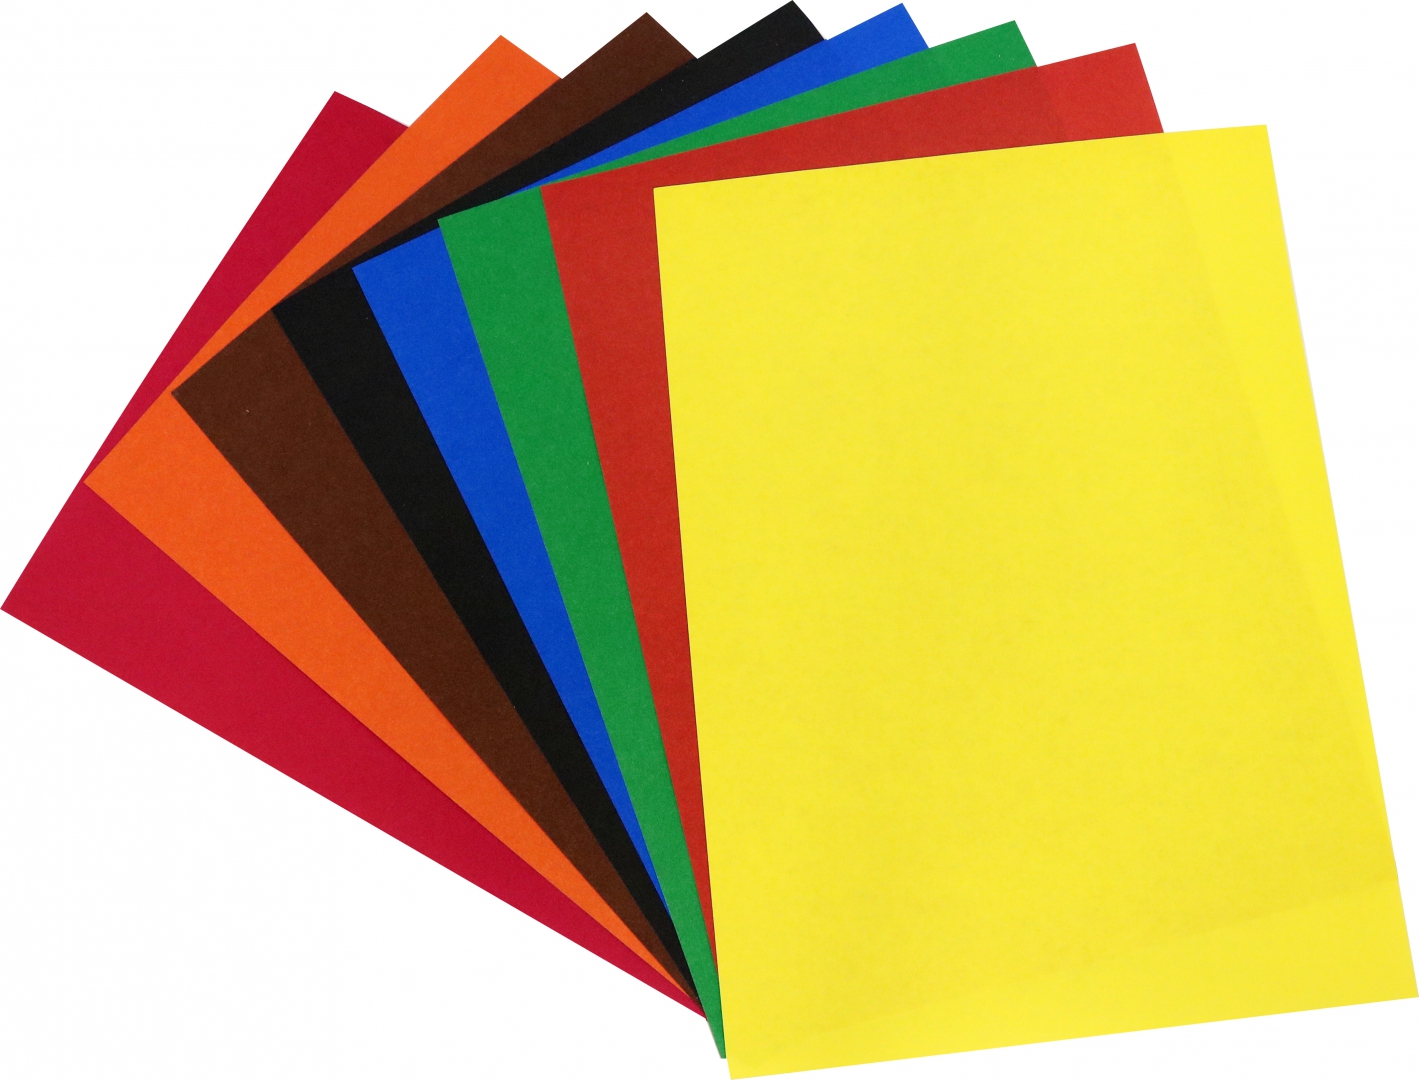 Иллюстрация 1 из 20 для Бумага цветная, 8 листов, 8 цветов, А4 (FK-KIN-6408) | Лабиринт - канцтовы. Источник: Лабиринт